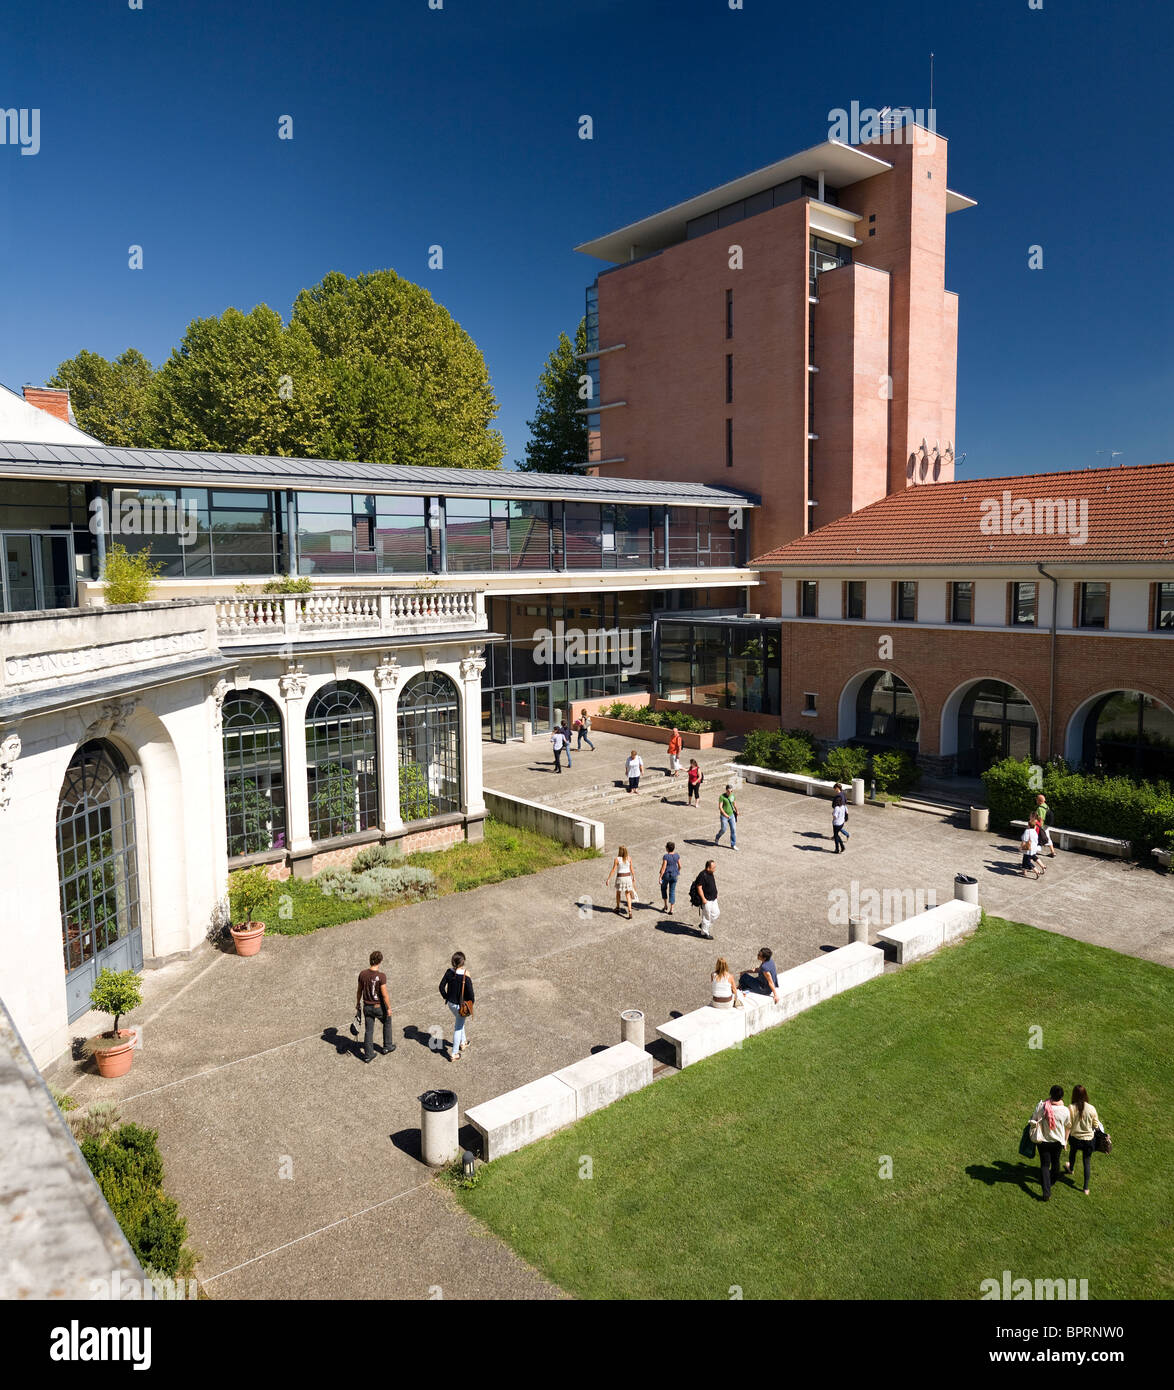 Le centre de l'université de Vichy, connu sous le nom de "Pôle Lardy' (France). Pôle universitaire de Vichy Val d'Allier (Auvergne - France). Banque D'Images